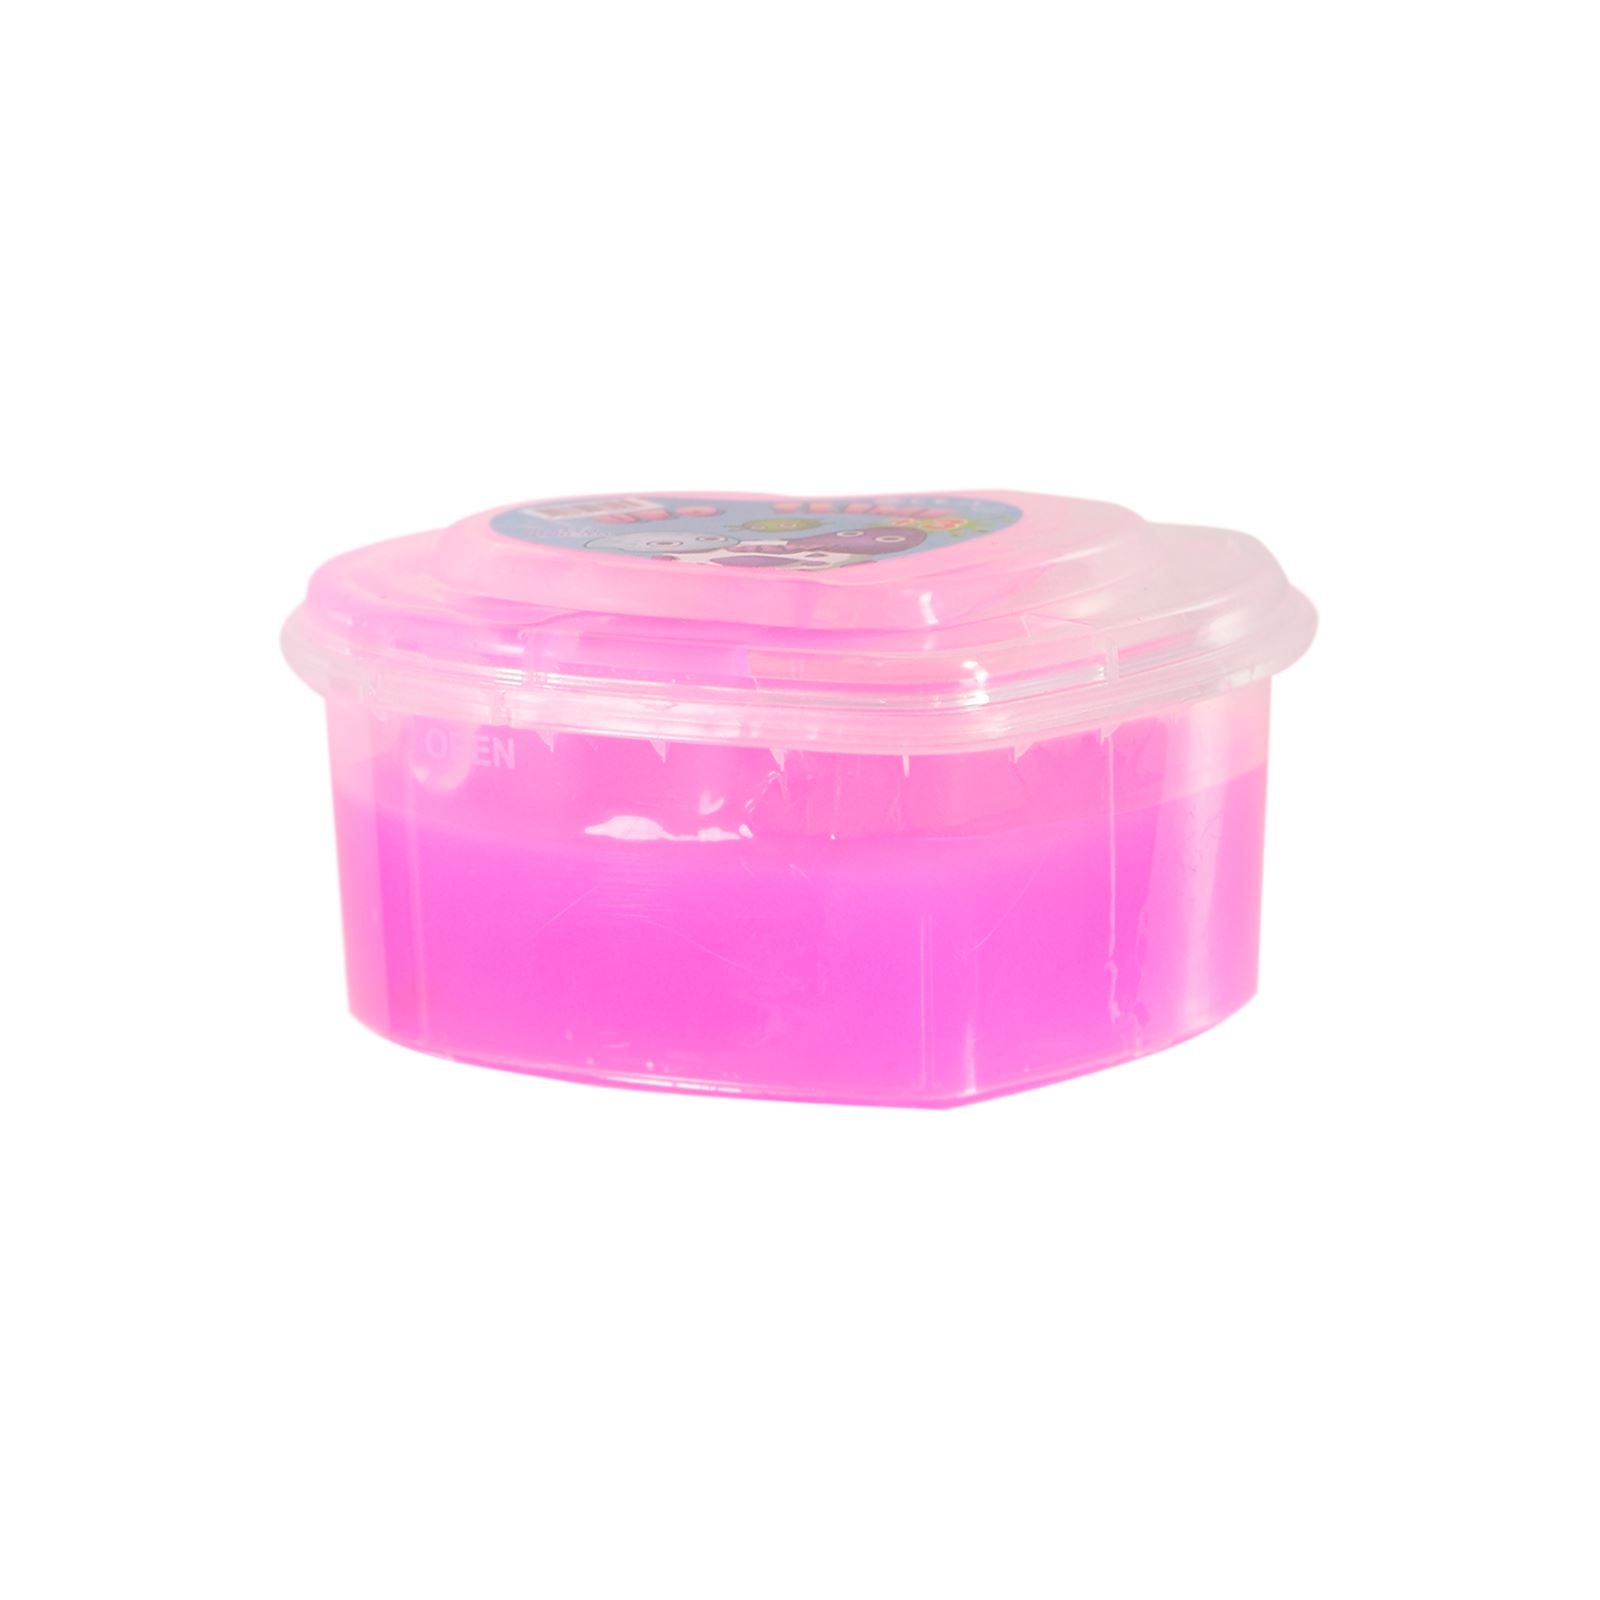 Duka Toys Ufo Fosforlu Slime Oyun Hamuru150 gr Neon Pembe